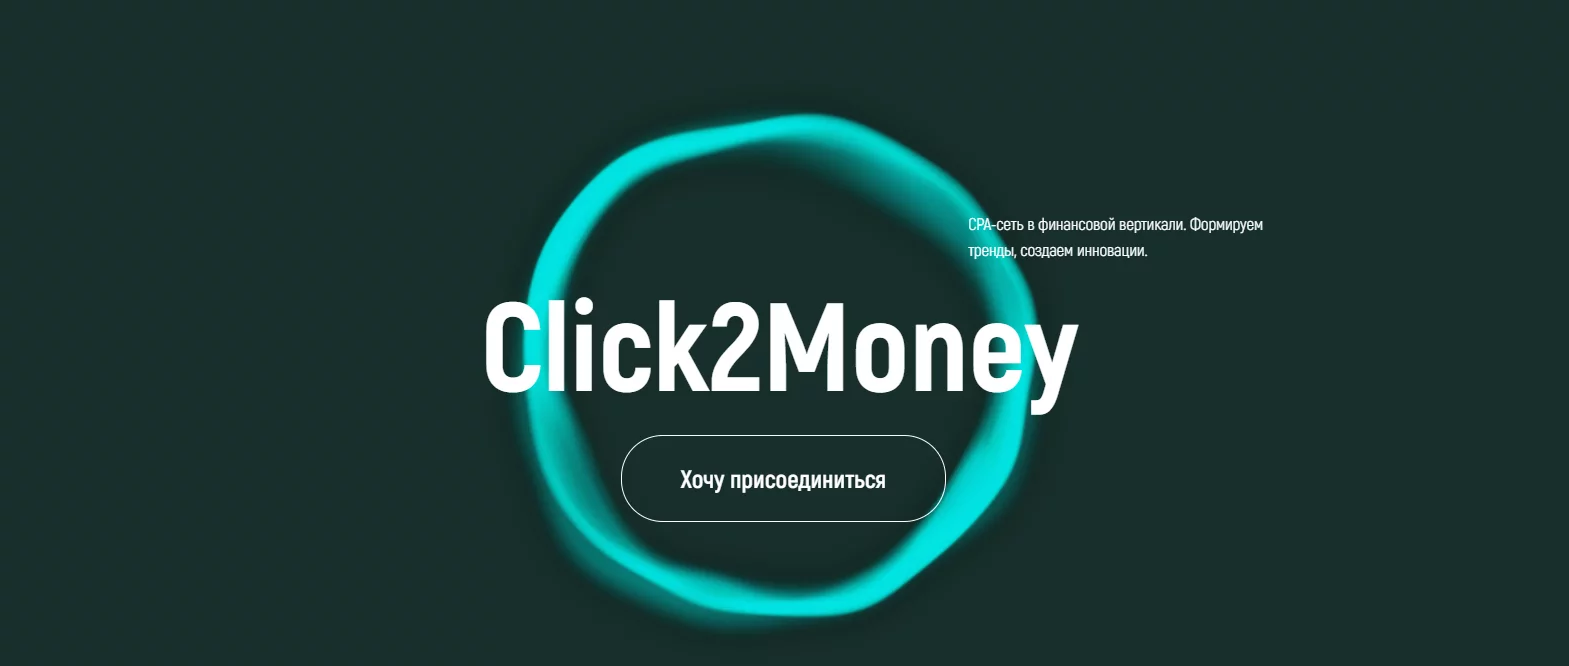 Партнерка Click2Money: обзор и отзывы